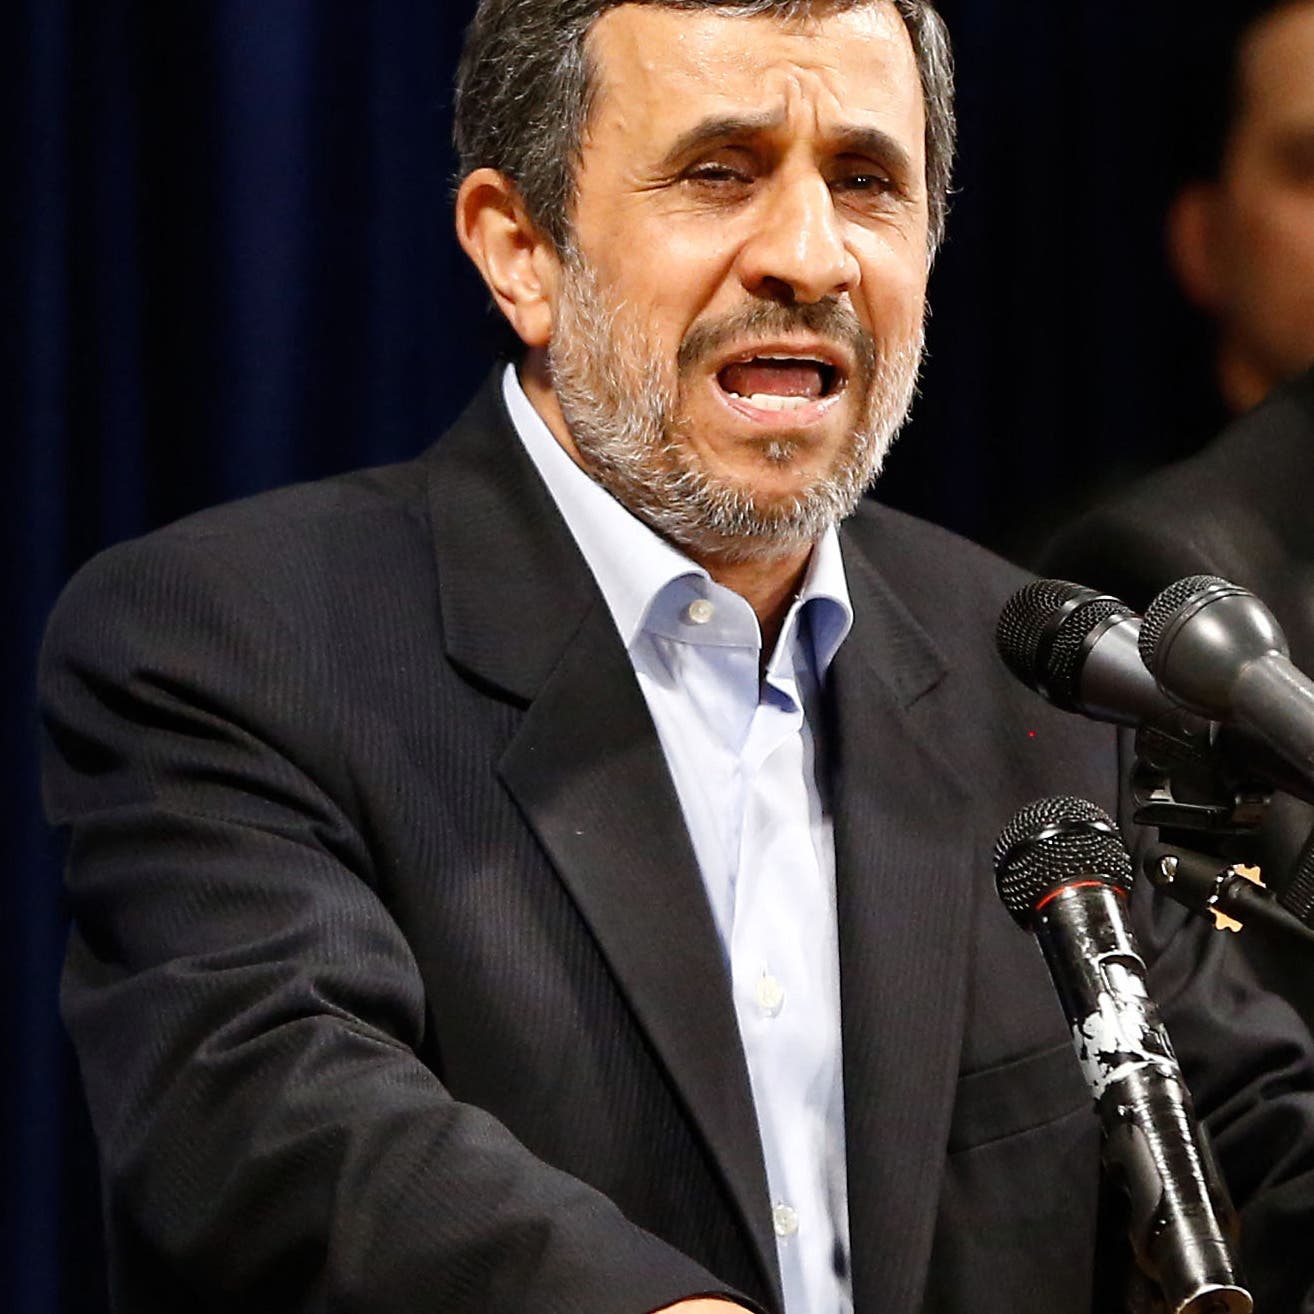 أحمدي نجاد يهدد: اقبلوني مرشحاً أو أفضح أسراراً؟!